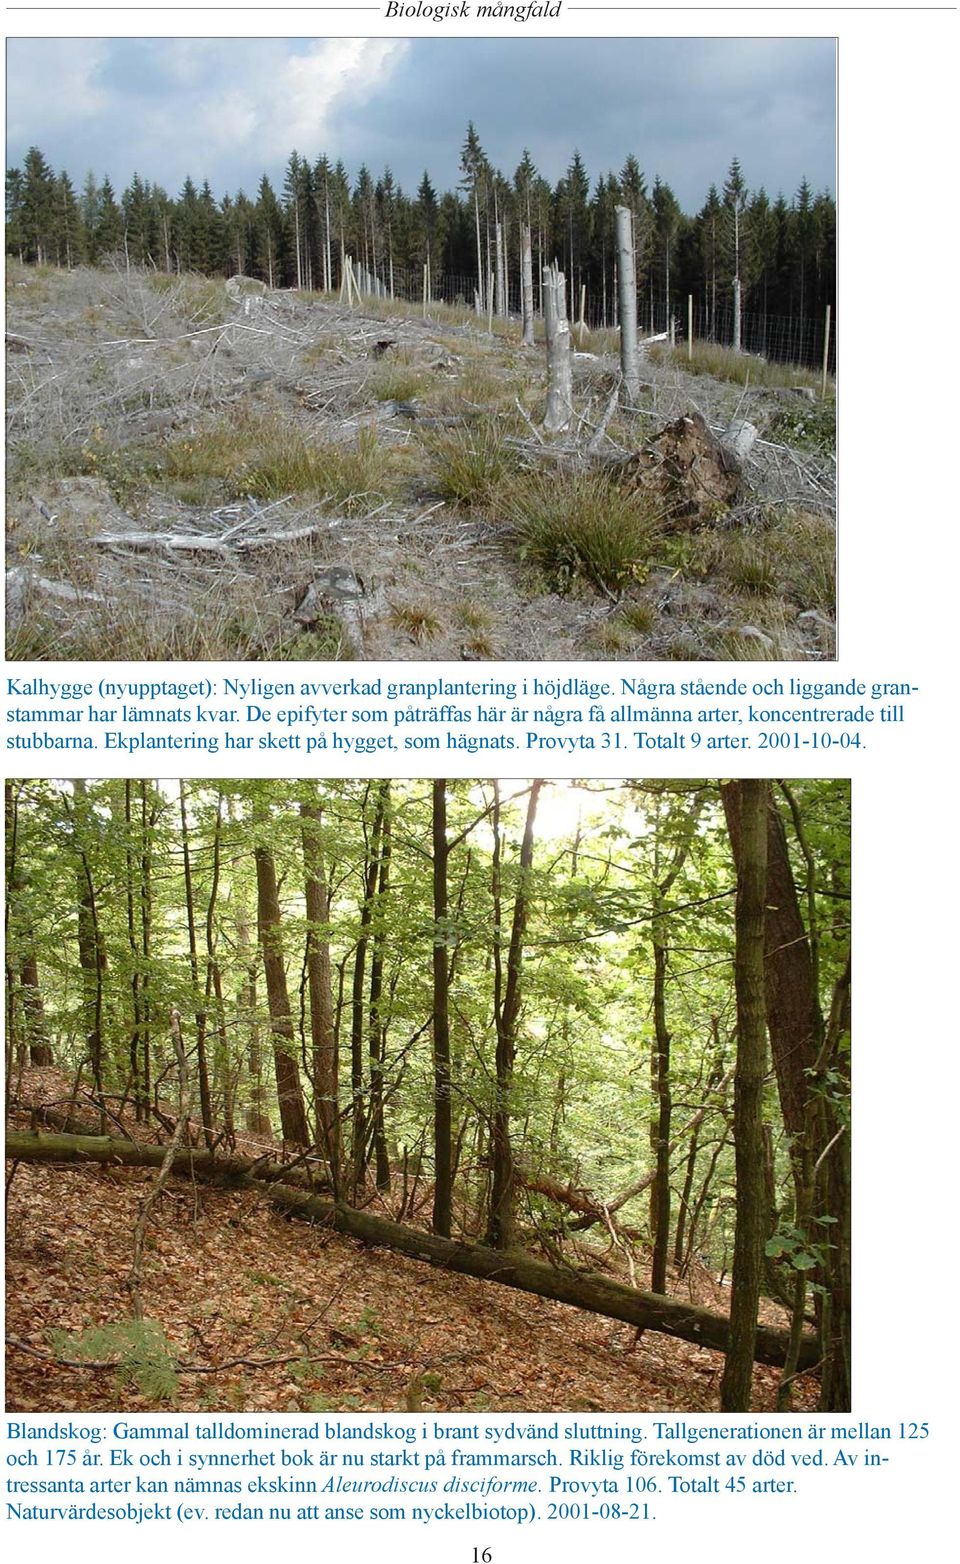 2001-10-04. Blandskog: Gammal talldominerad blandskog i brant sydvänd sluttning. Tallgenerationen är mellan 125 och 175 år.